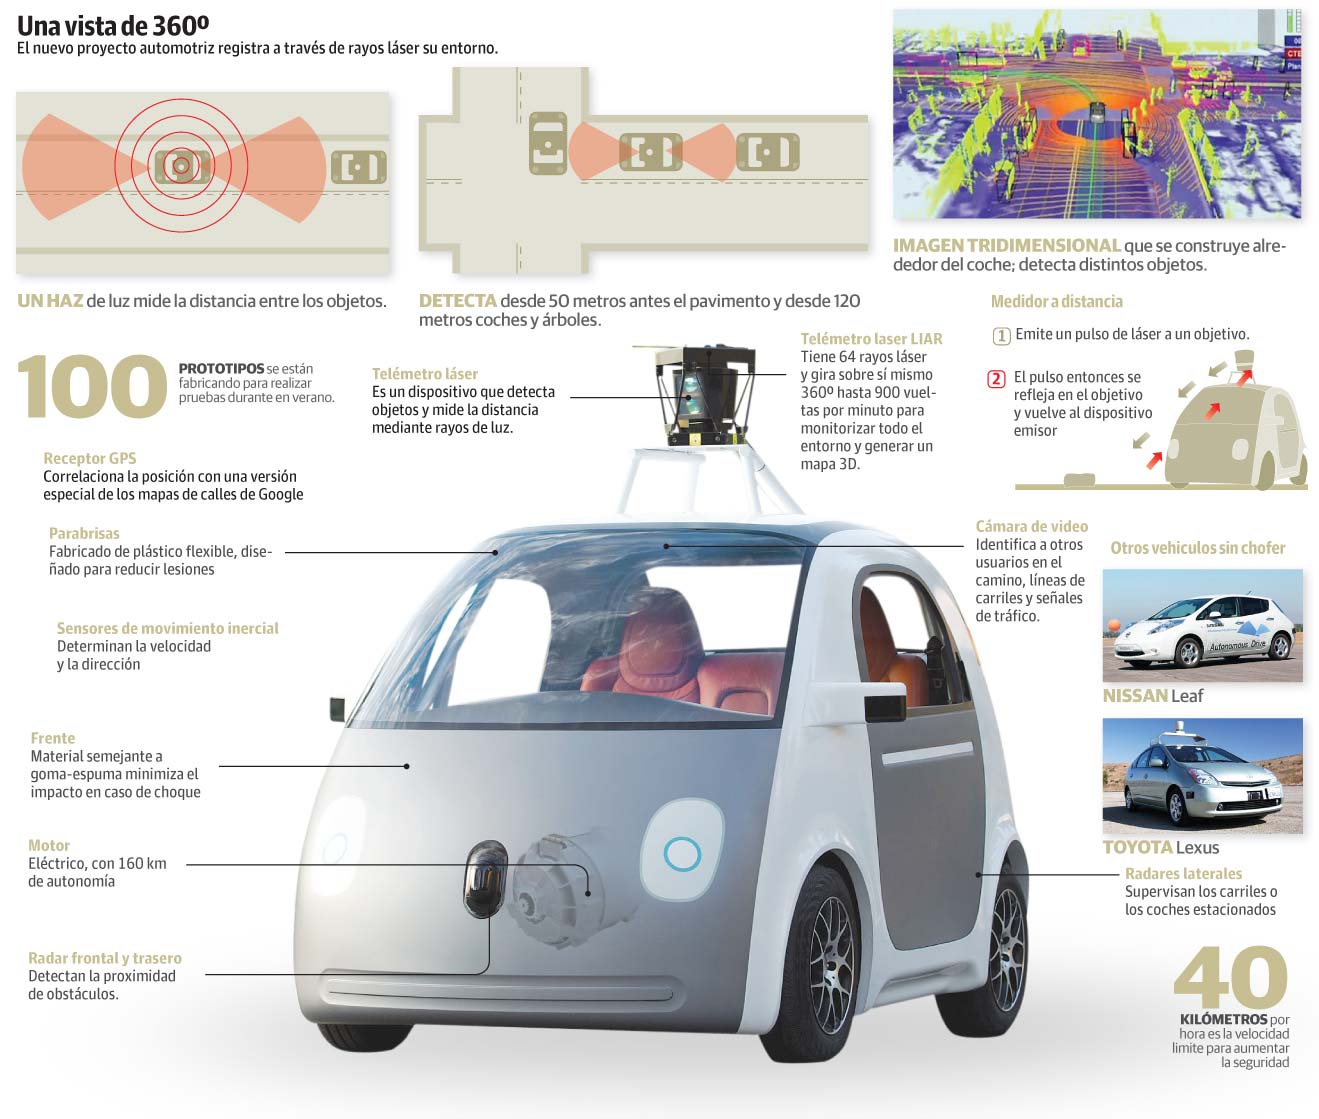 Aprender a manejar auto de google autonomo